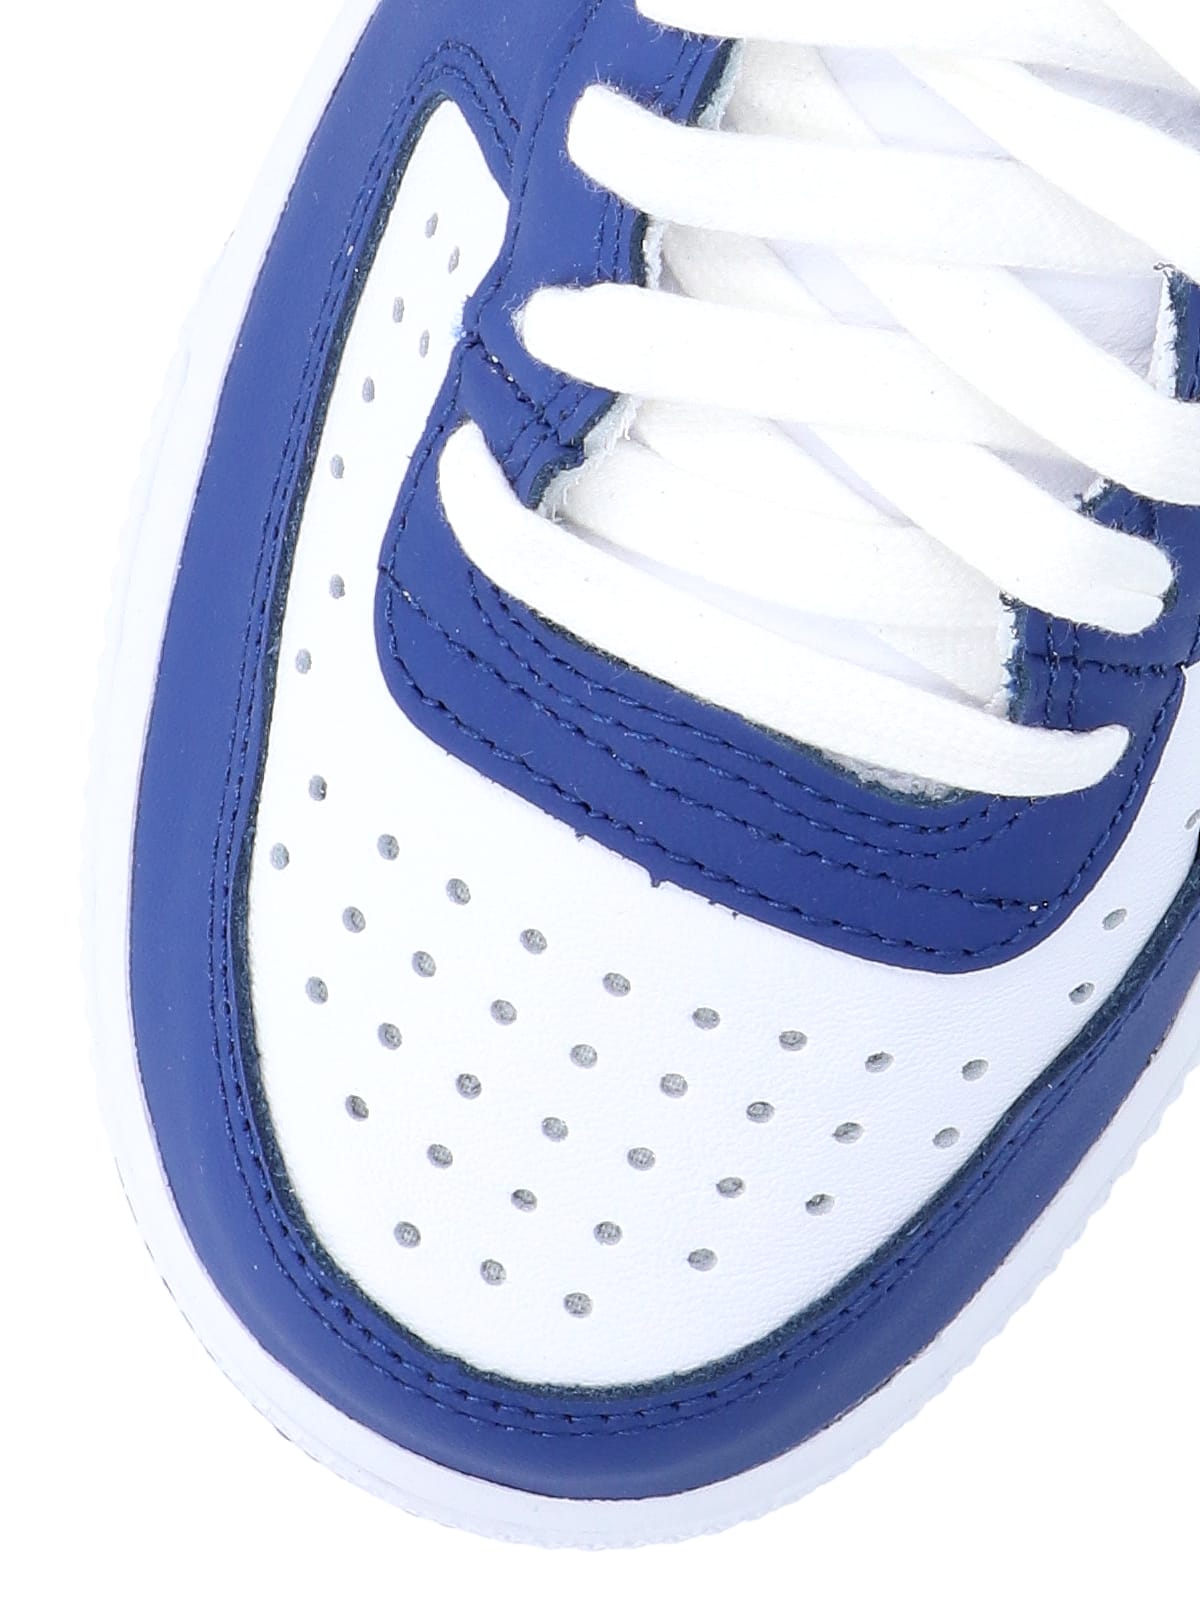 Shop Comme Des Garçons Homme Deux X Nike Terminator High Sneakers In Blue